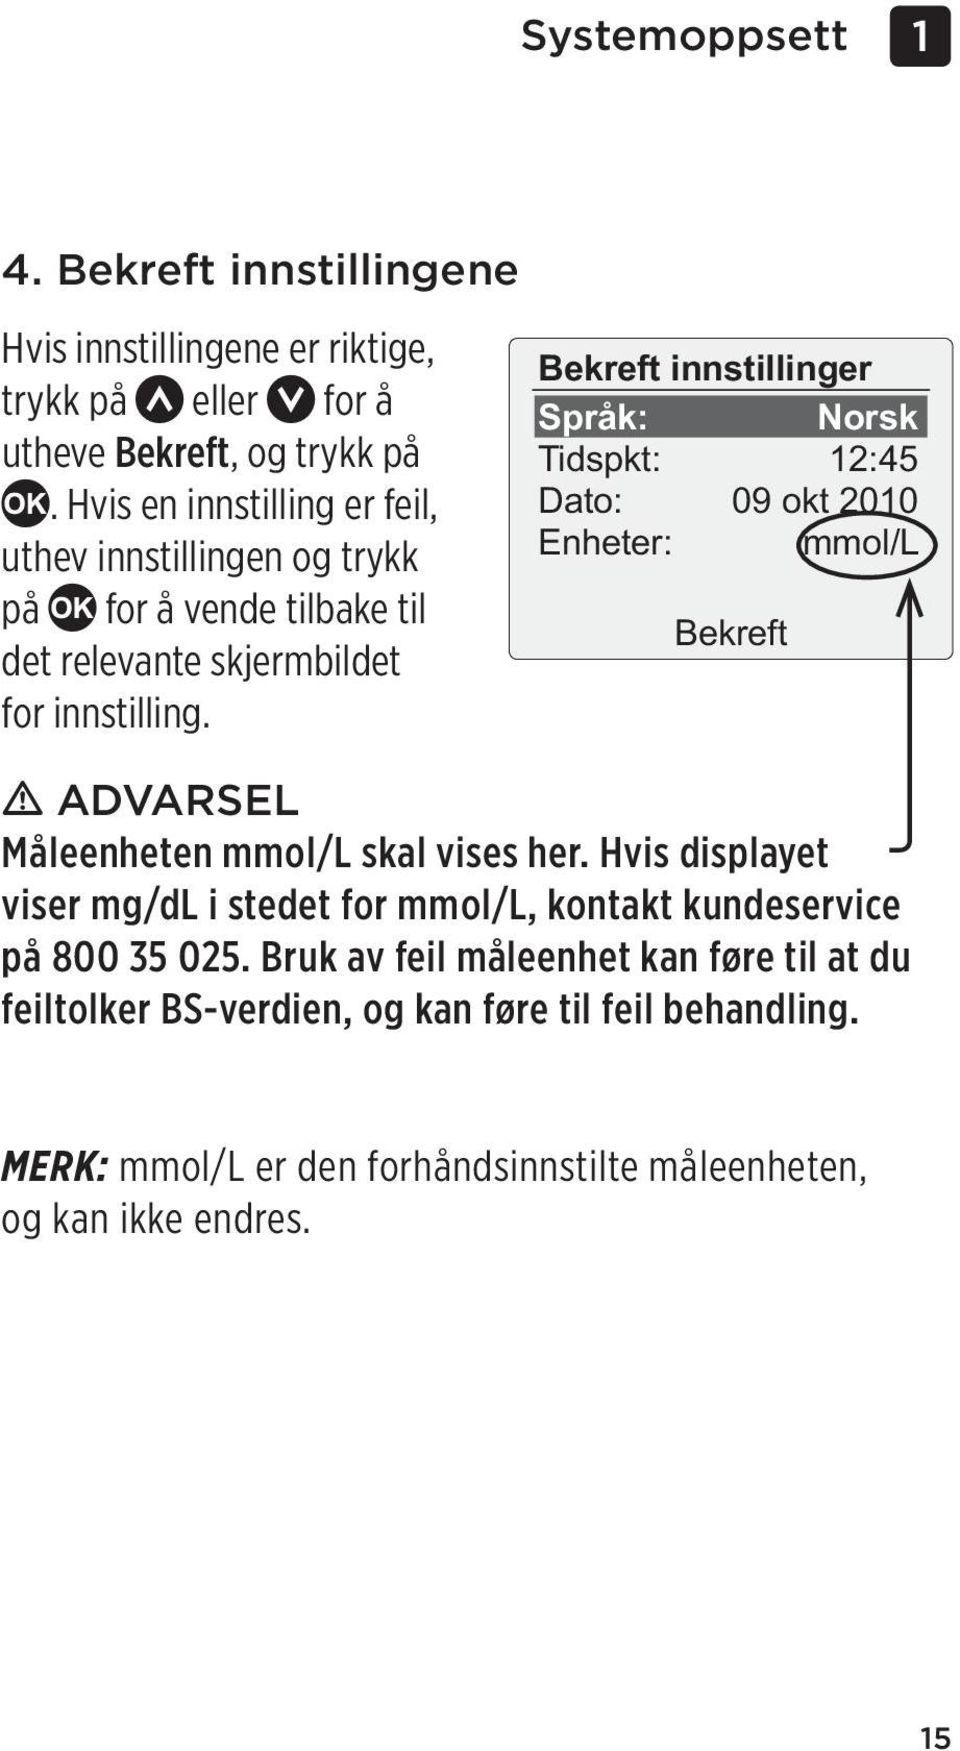 Bekreft innstillinger Språk: Norsk Tidspkt: 12:45 Dato: 09 okt 2010 Enheter: mmol/l Bekreft m ADVARSEL Måleenheten mmol/l skal vises her.